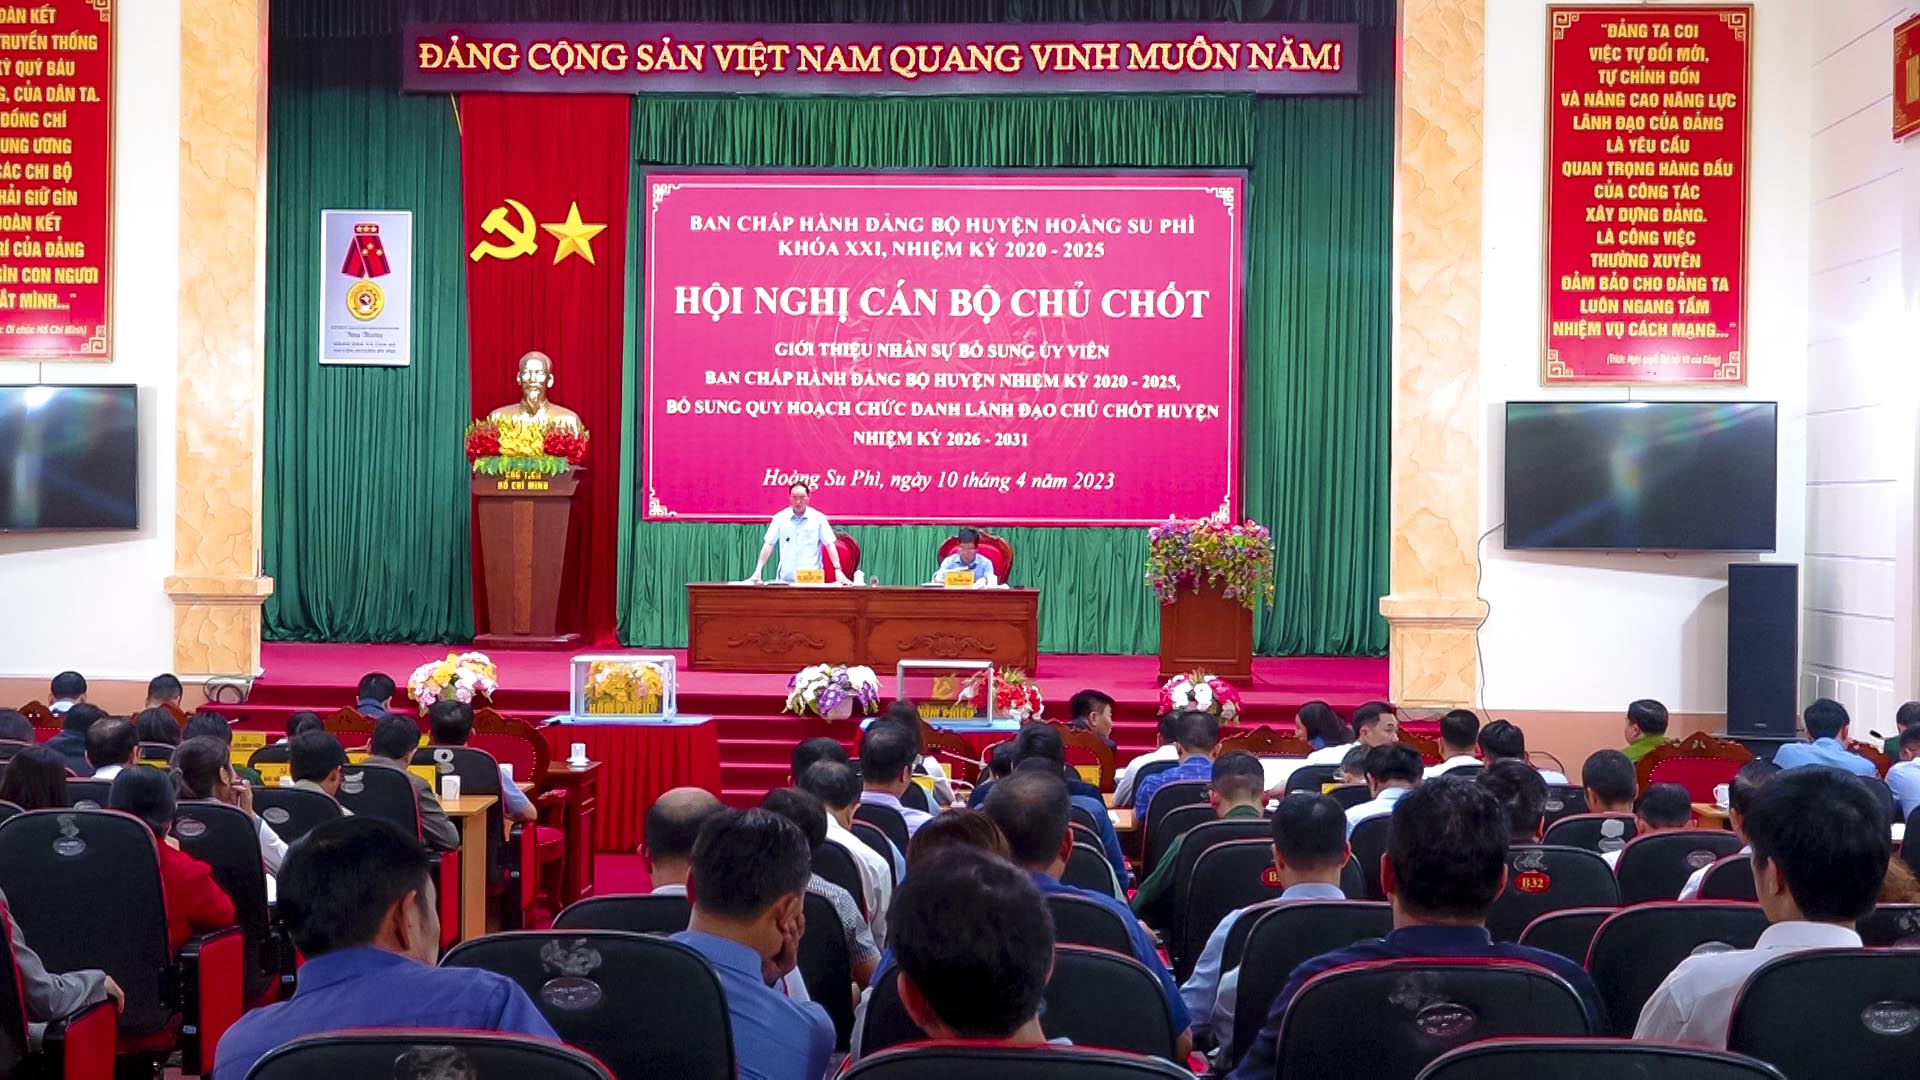 Huyện ủy Hoàng Su Phì tổ chức các Hội nghị về công tác cán bộ.